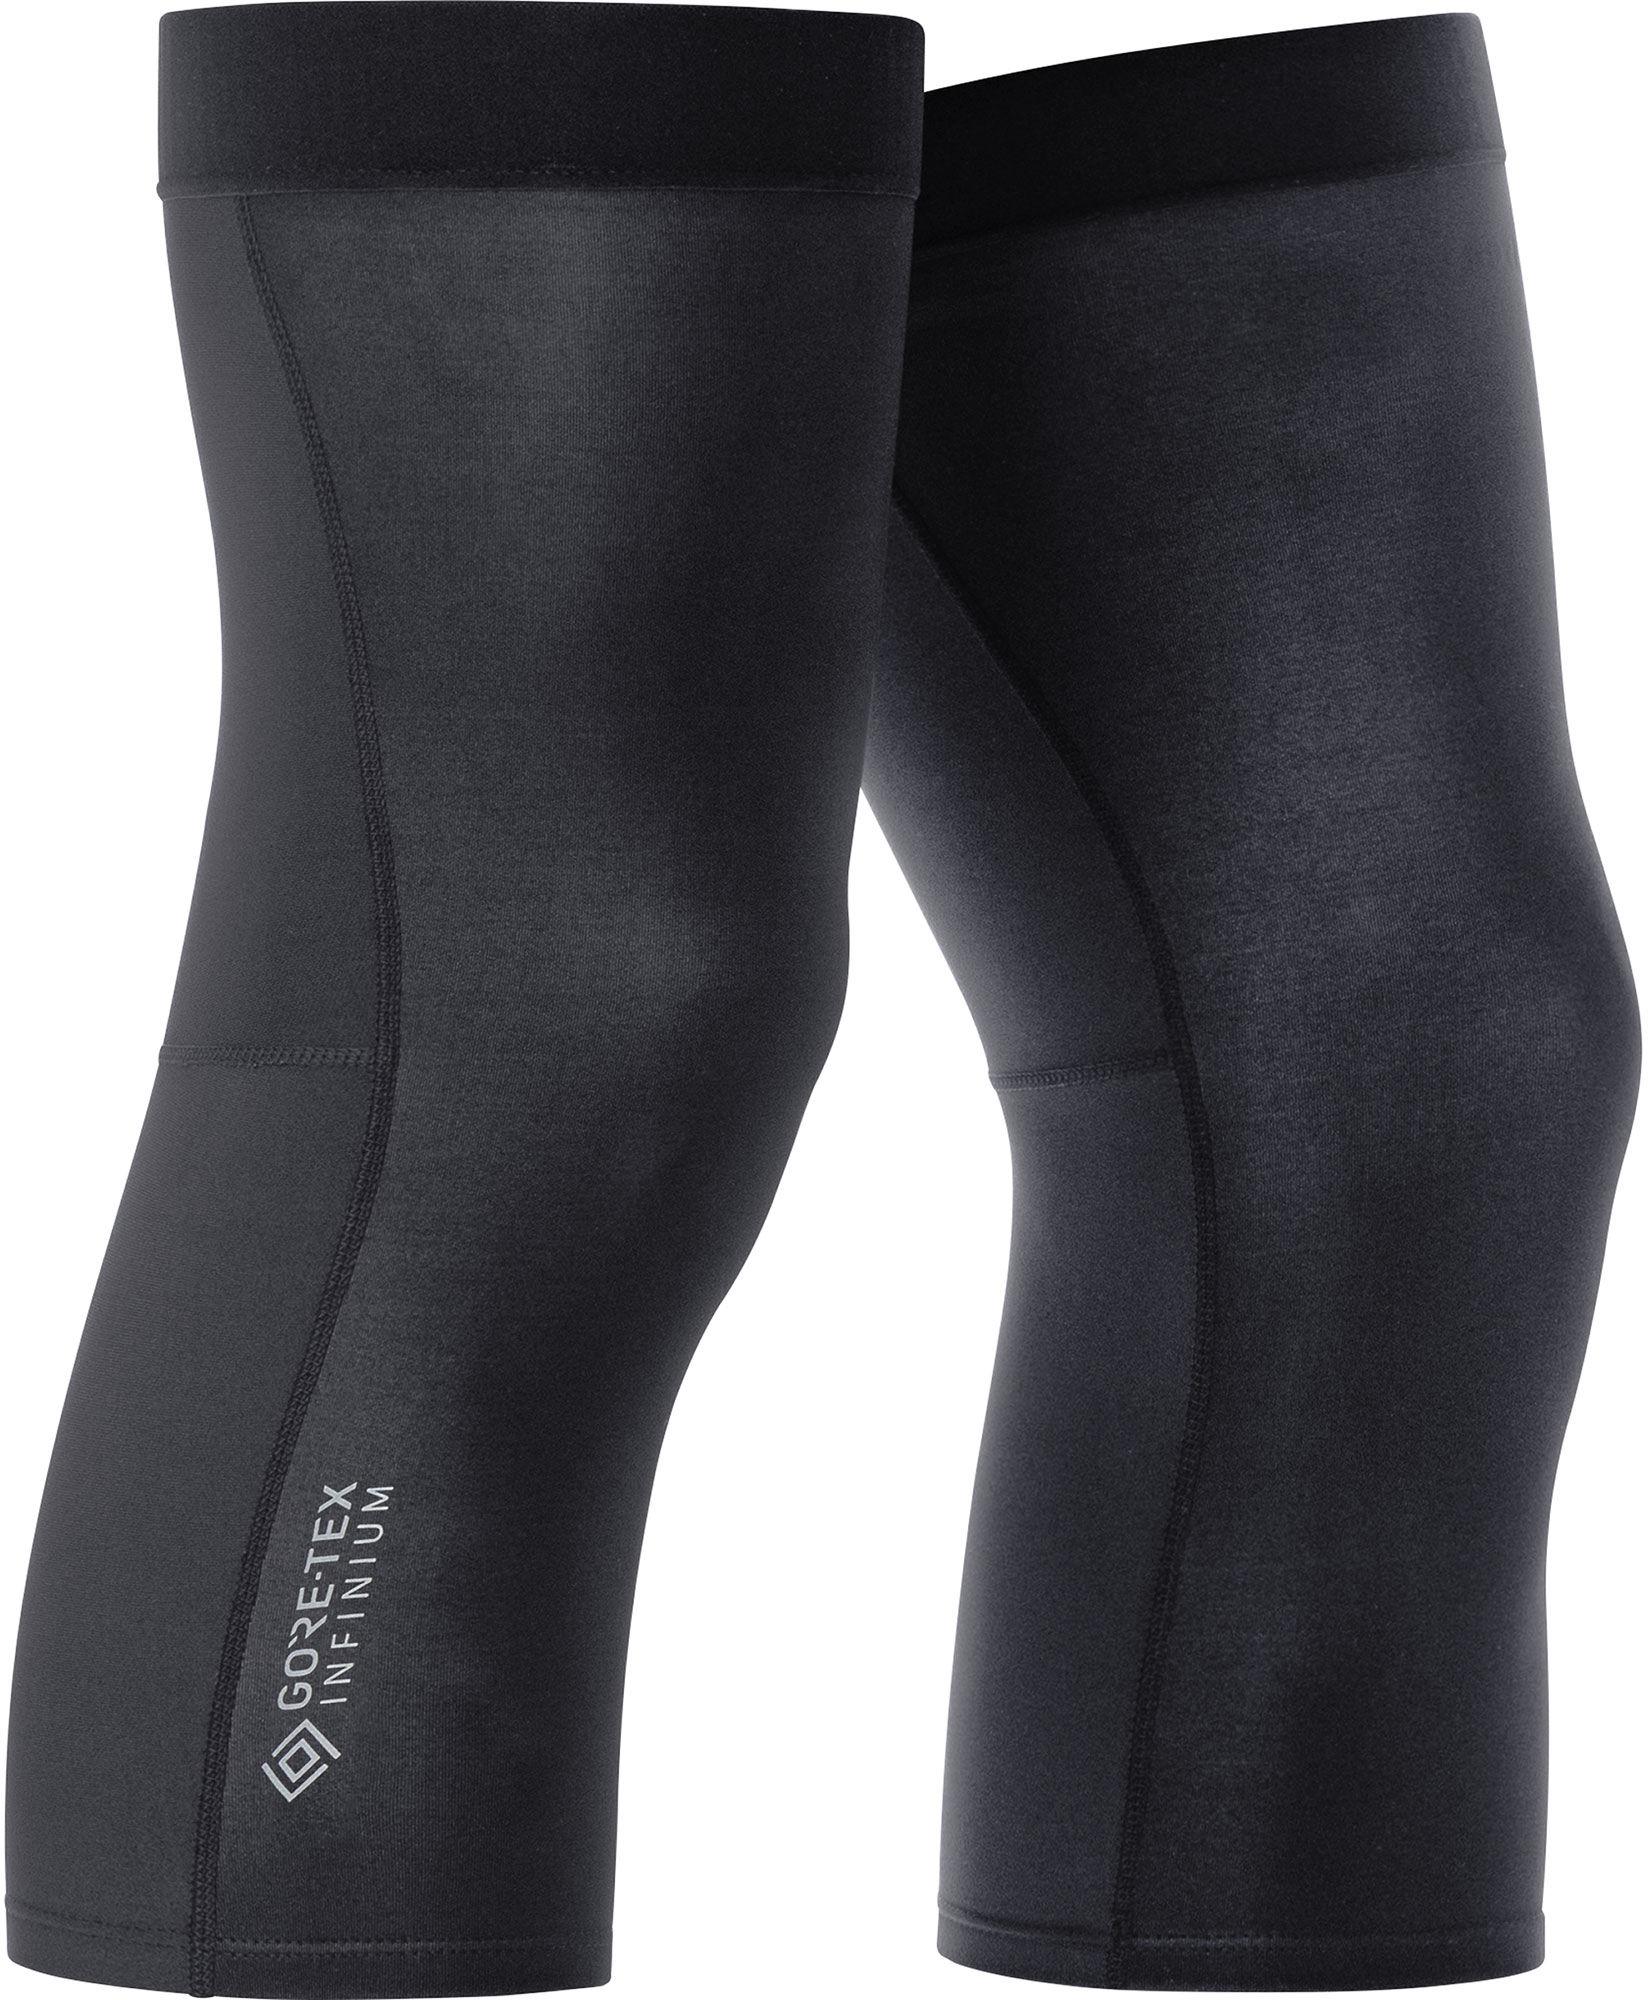 Gorewear Shield Knee Warmers - Black